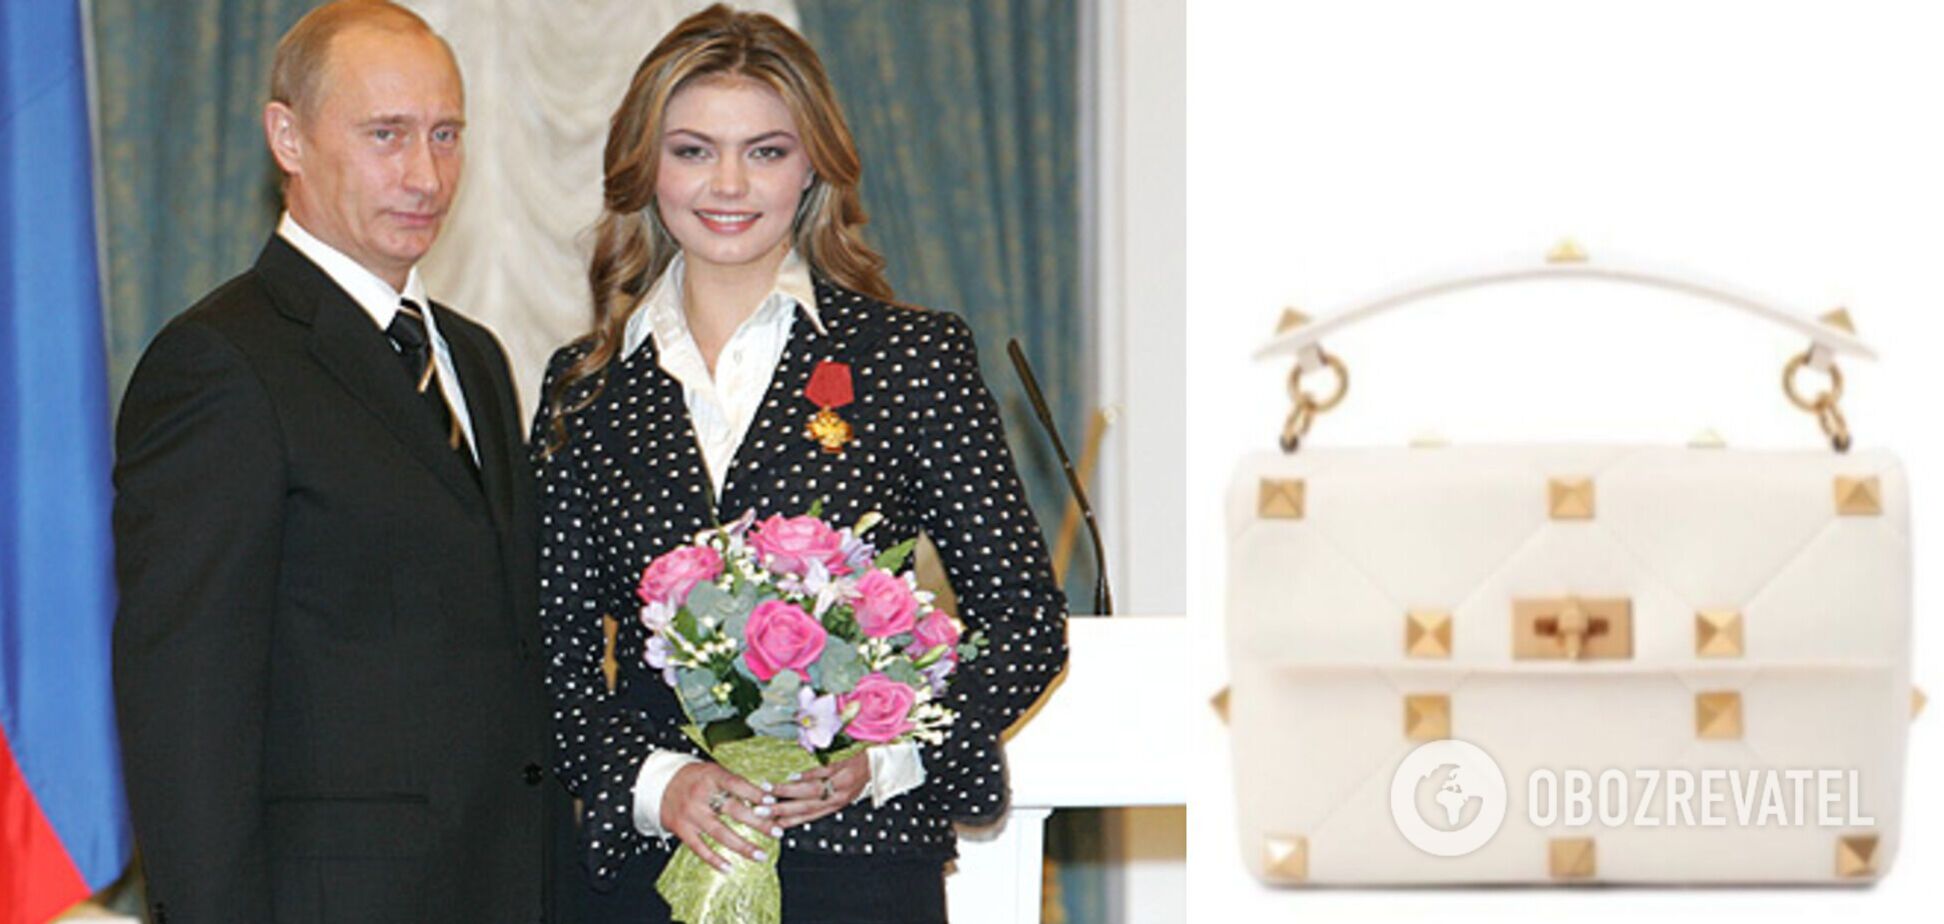 Коханка Путіна Кабаєва засвітилася на виставці в Російському музеї з люксовою сумкою від Valentino за 3 тисячі доларів